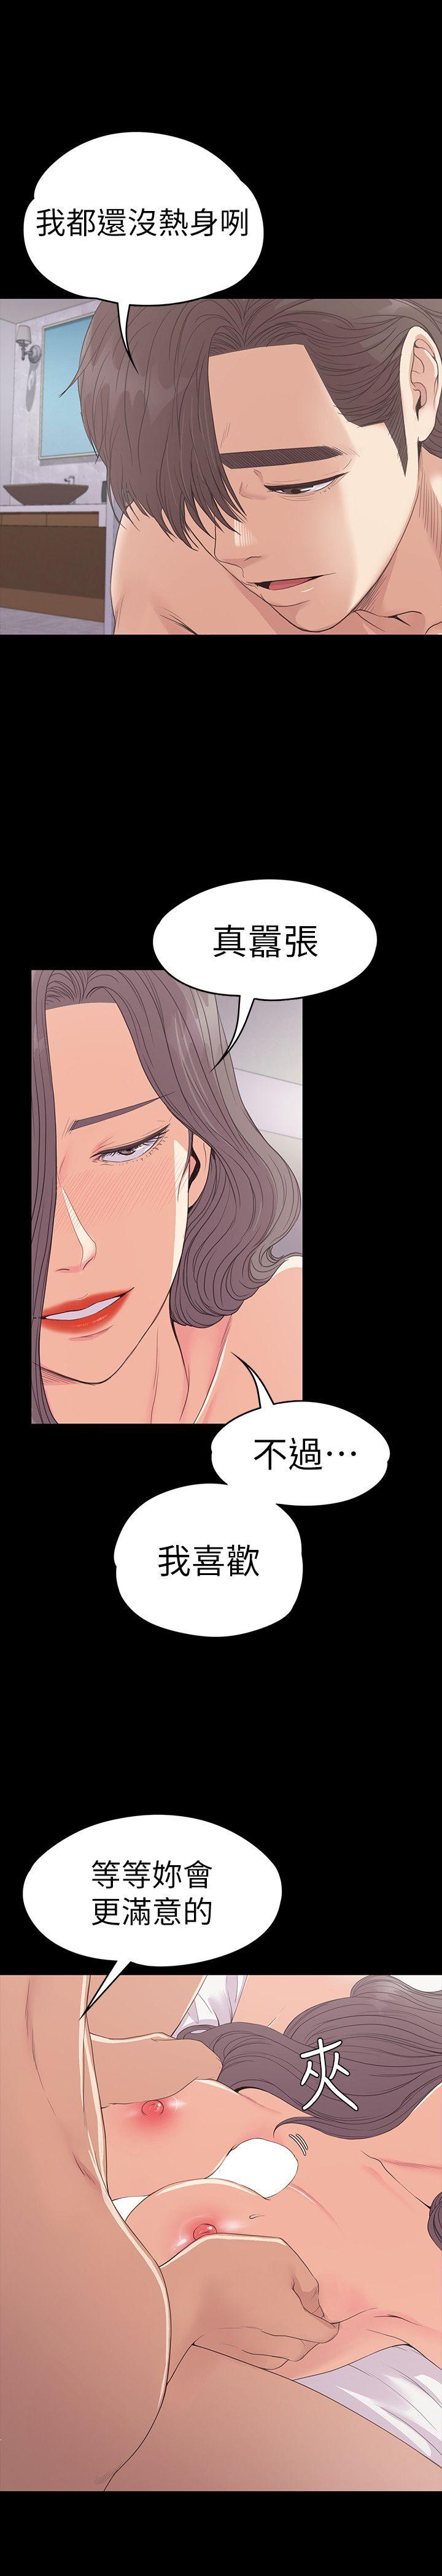 《爱上酒店妹(江南罗曼史)》漫画 第52话-开始面试